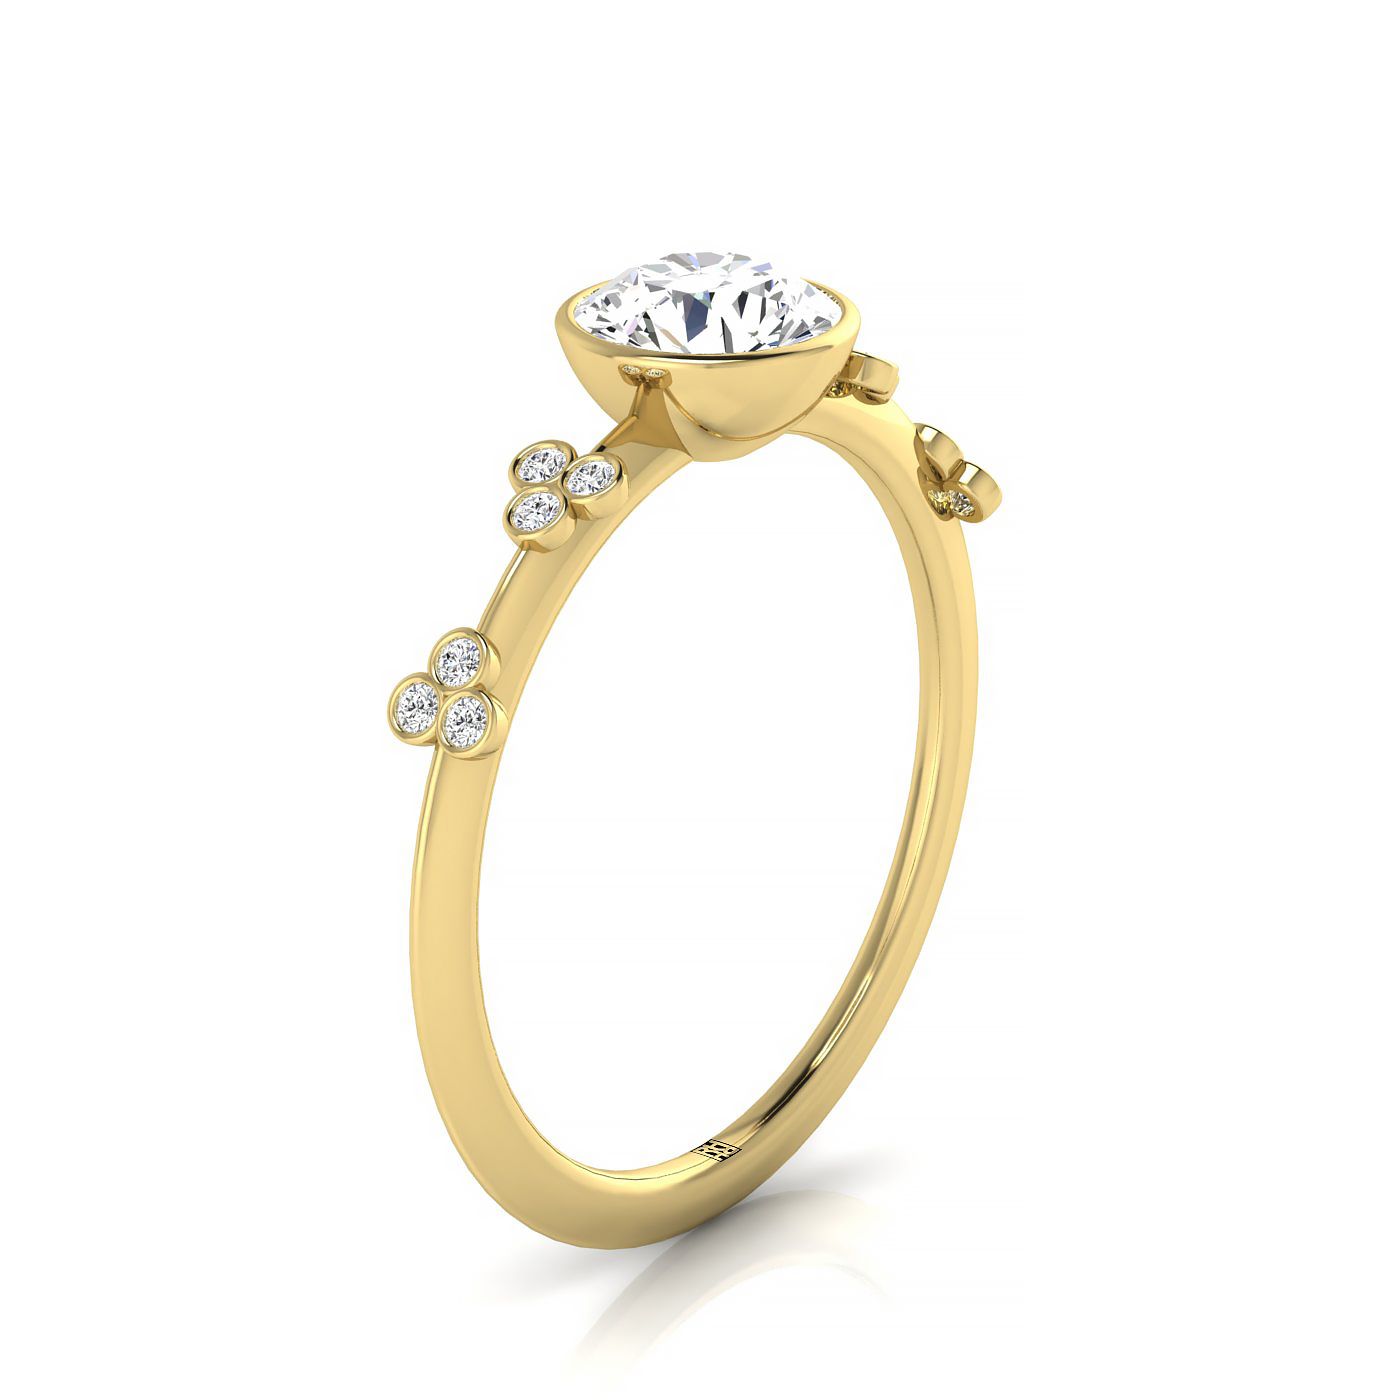 18ky Bezel Set Round Engagement Ring With 12 Clover Bezel Set Round Diamonds On Shank